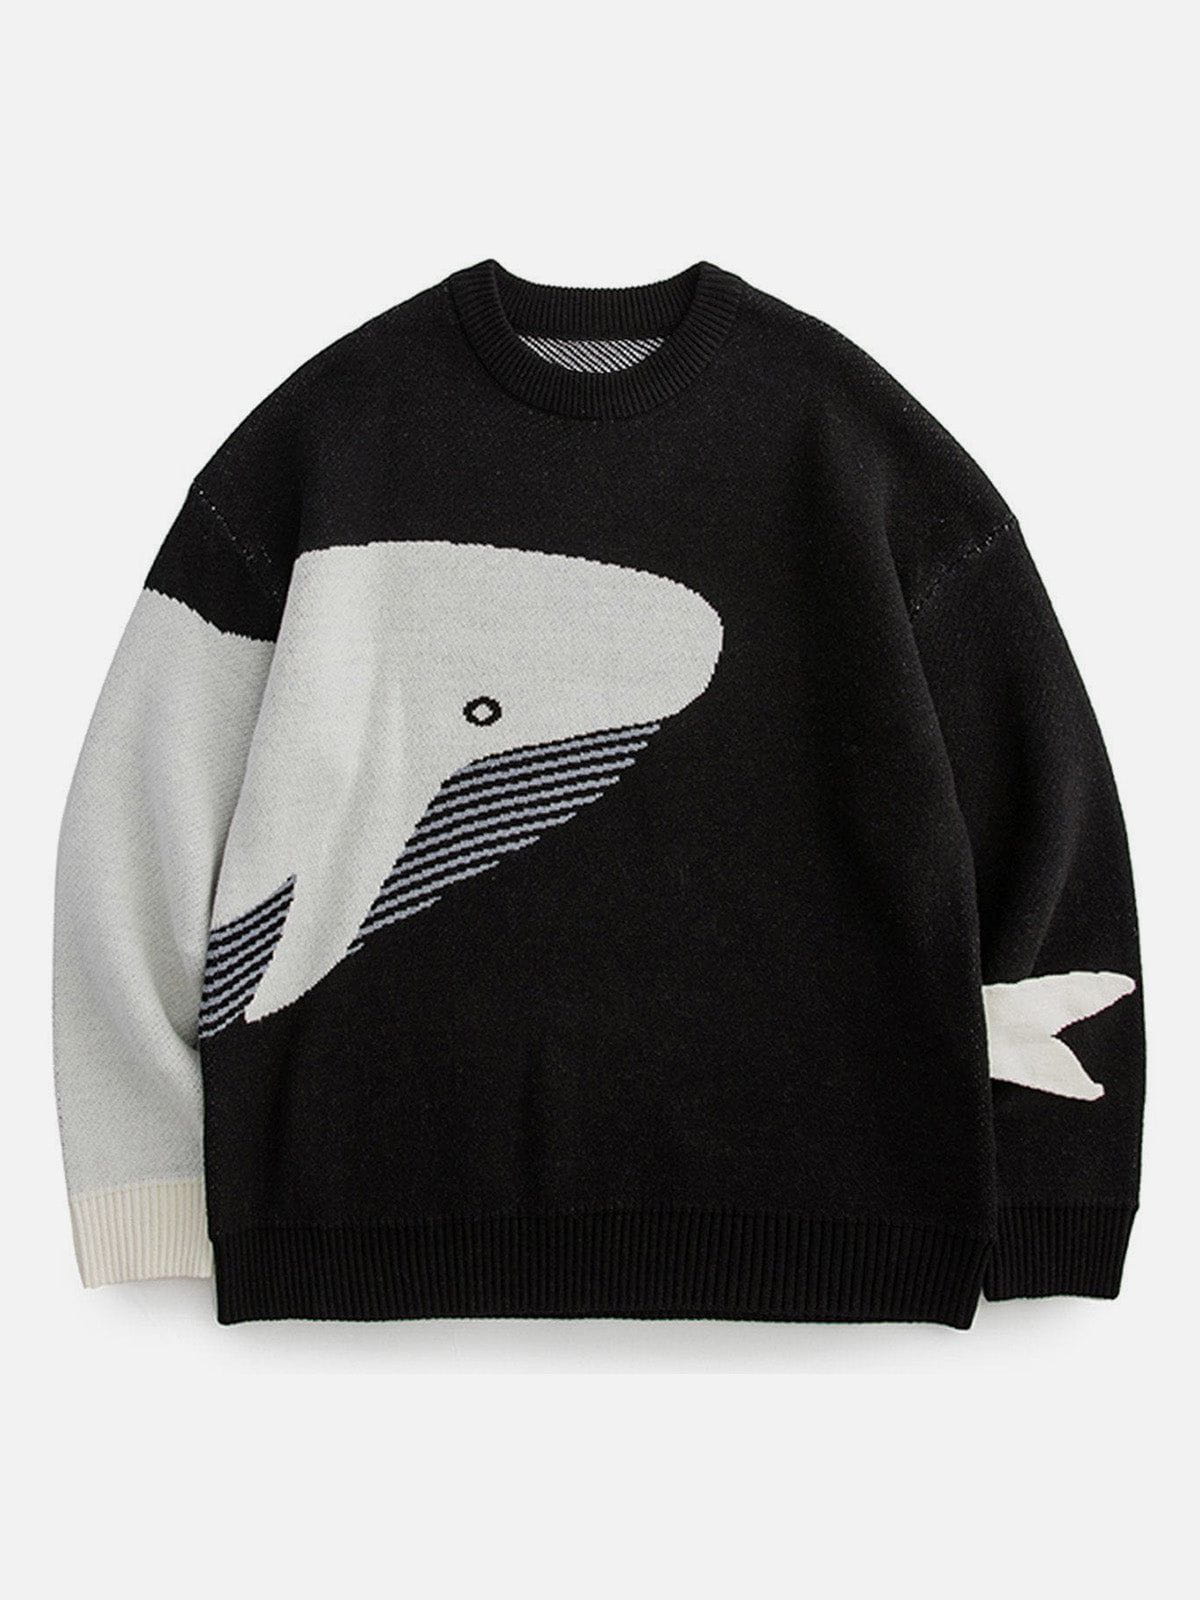 Eprezzy® - The Loneliest Whale Knit Sweater Streetwear Fashion - eprezzy.com